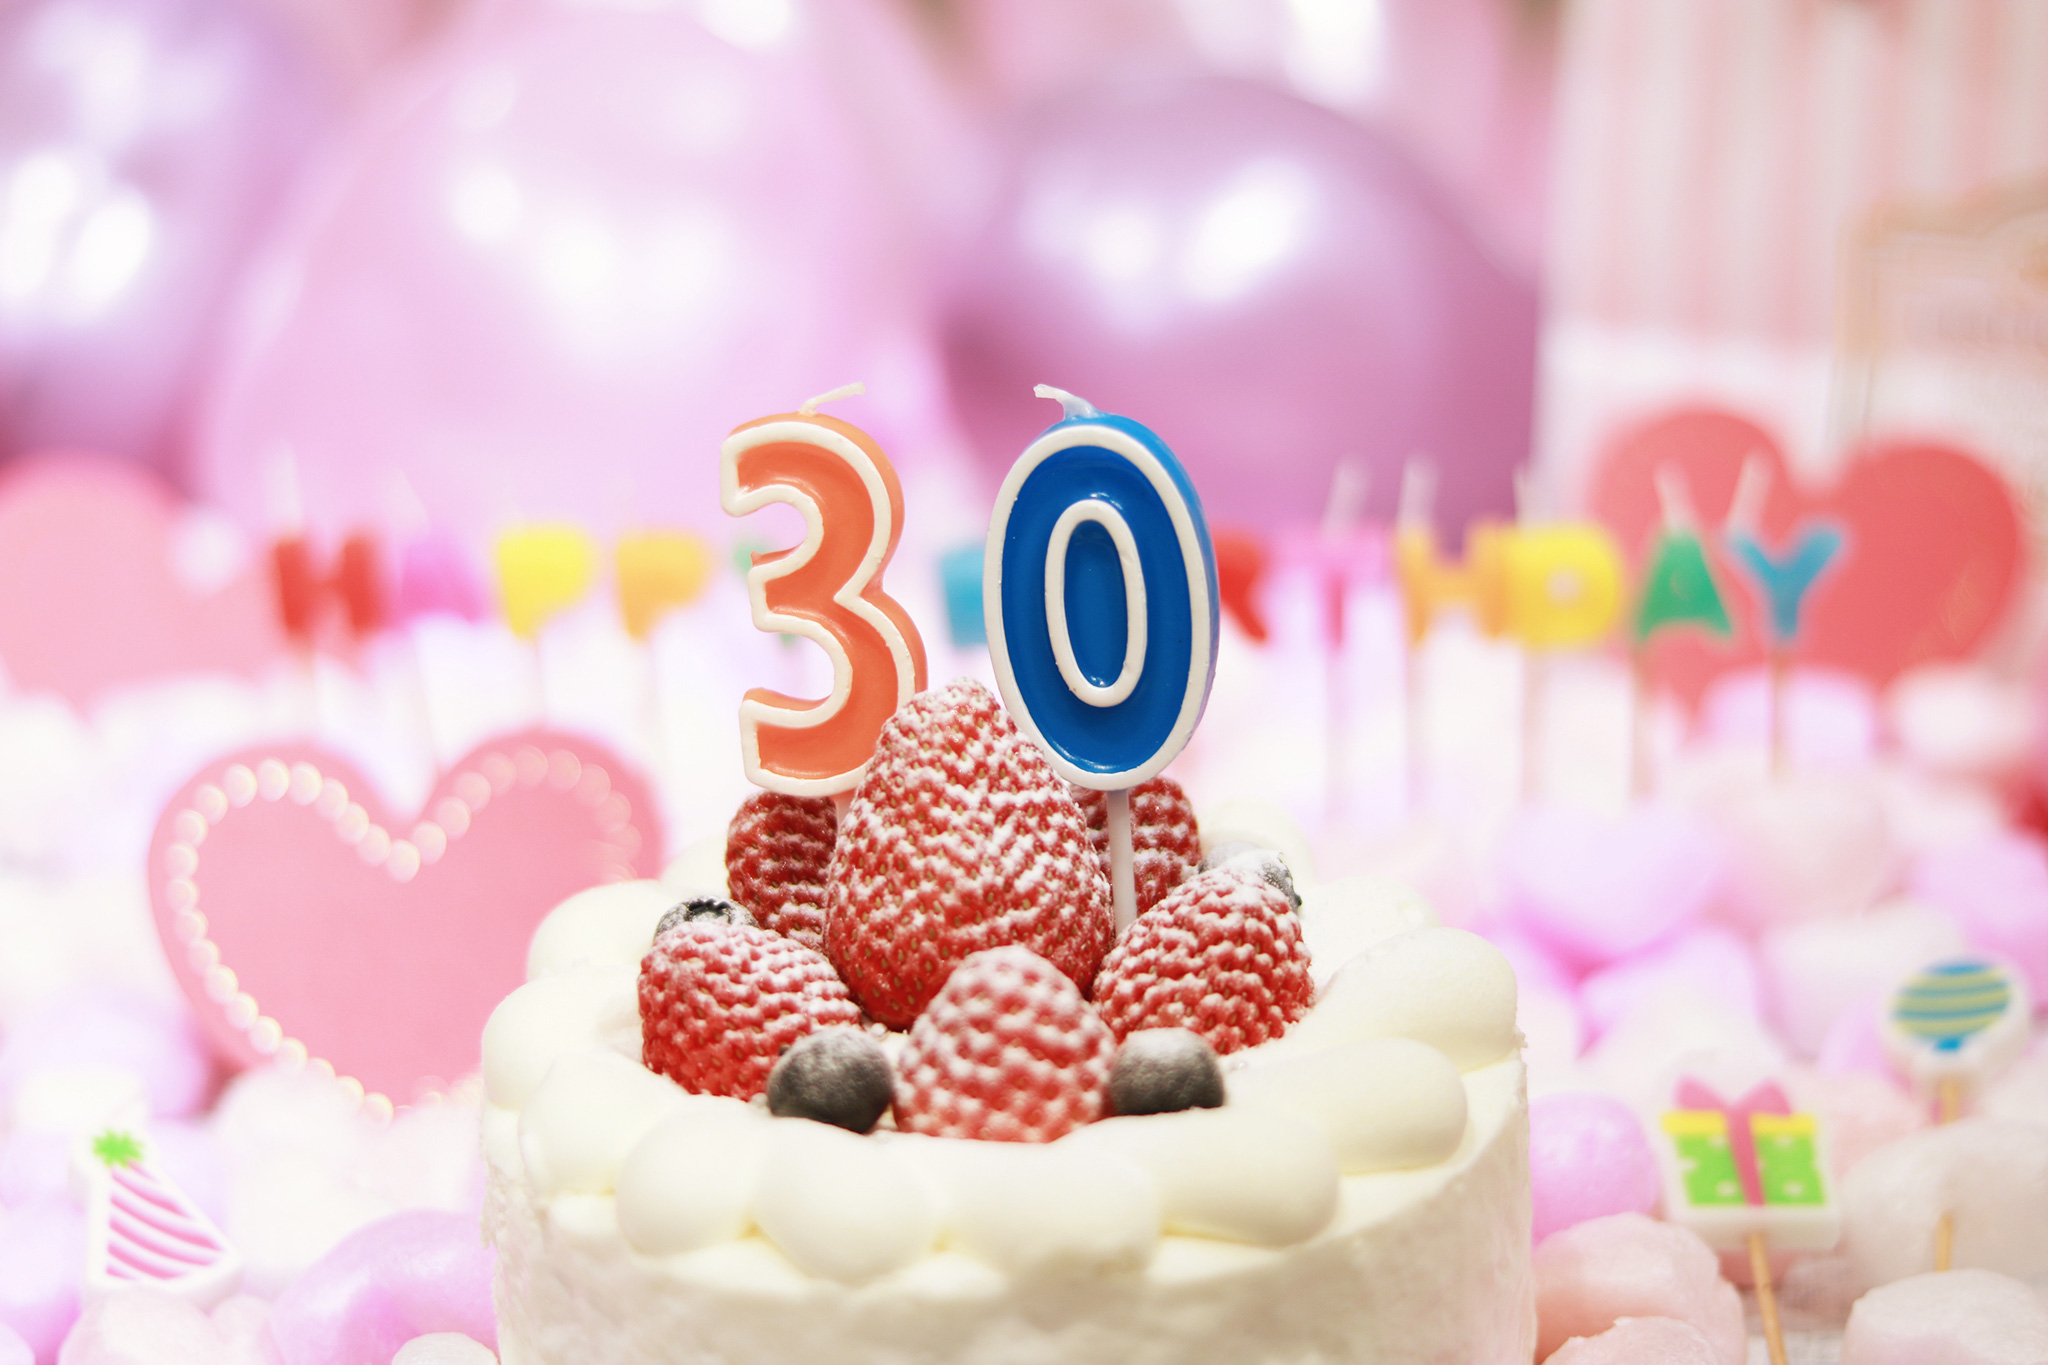 オシャレな誕生日画像 可愛いケーキとキャンドルでお祝い 30歳編 のフリー画像 おしゃれなフリー写真素材 Girly Drop